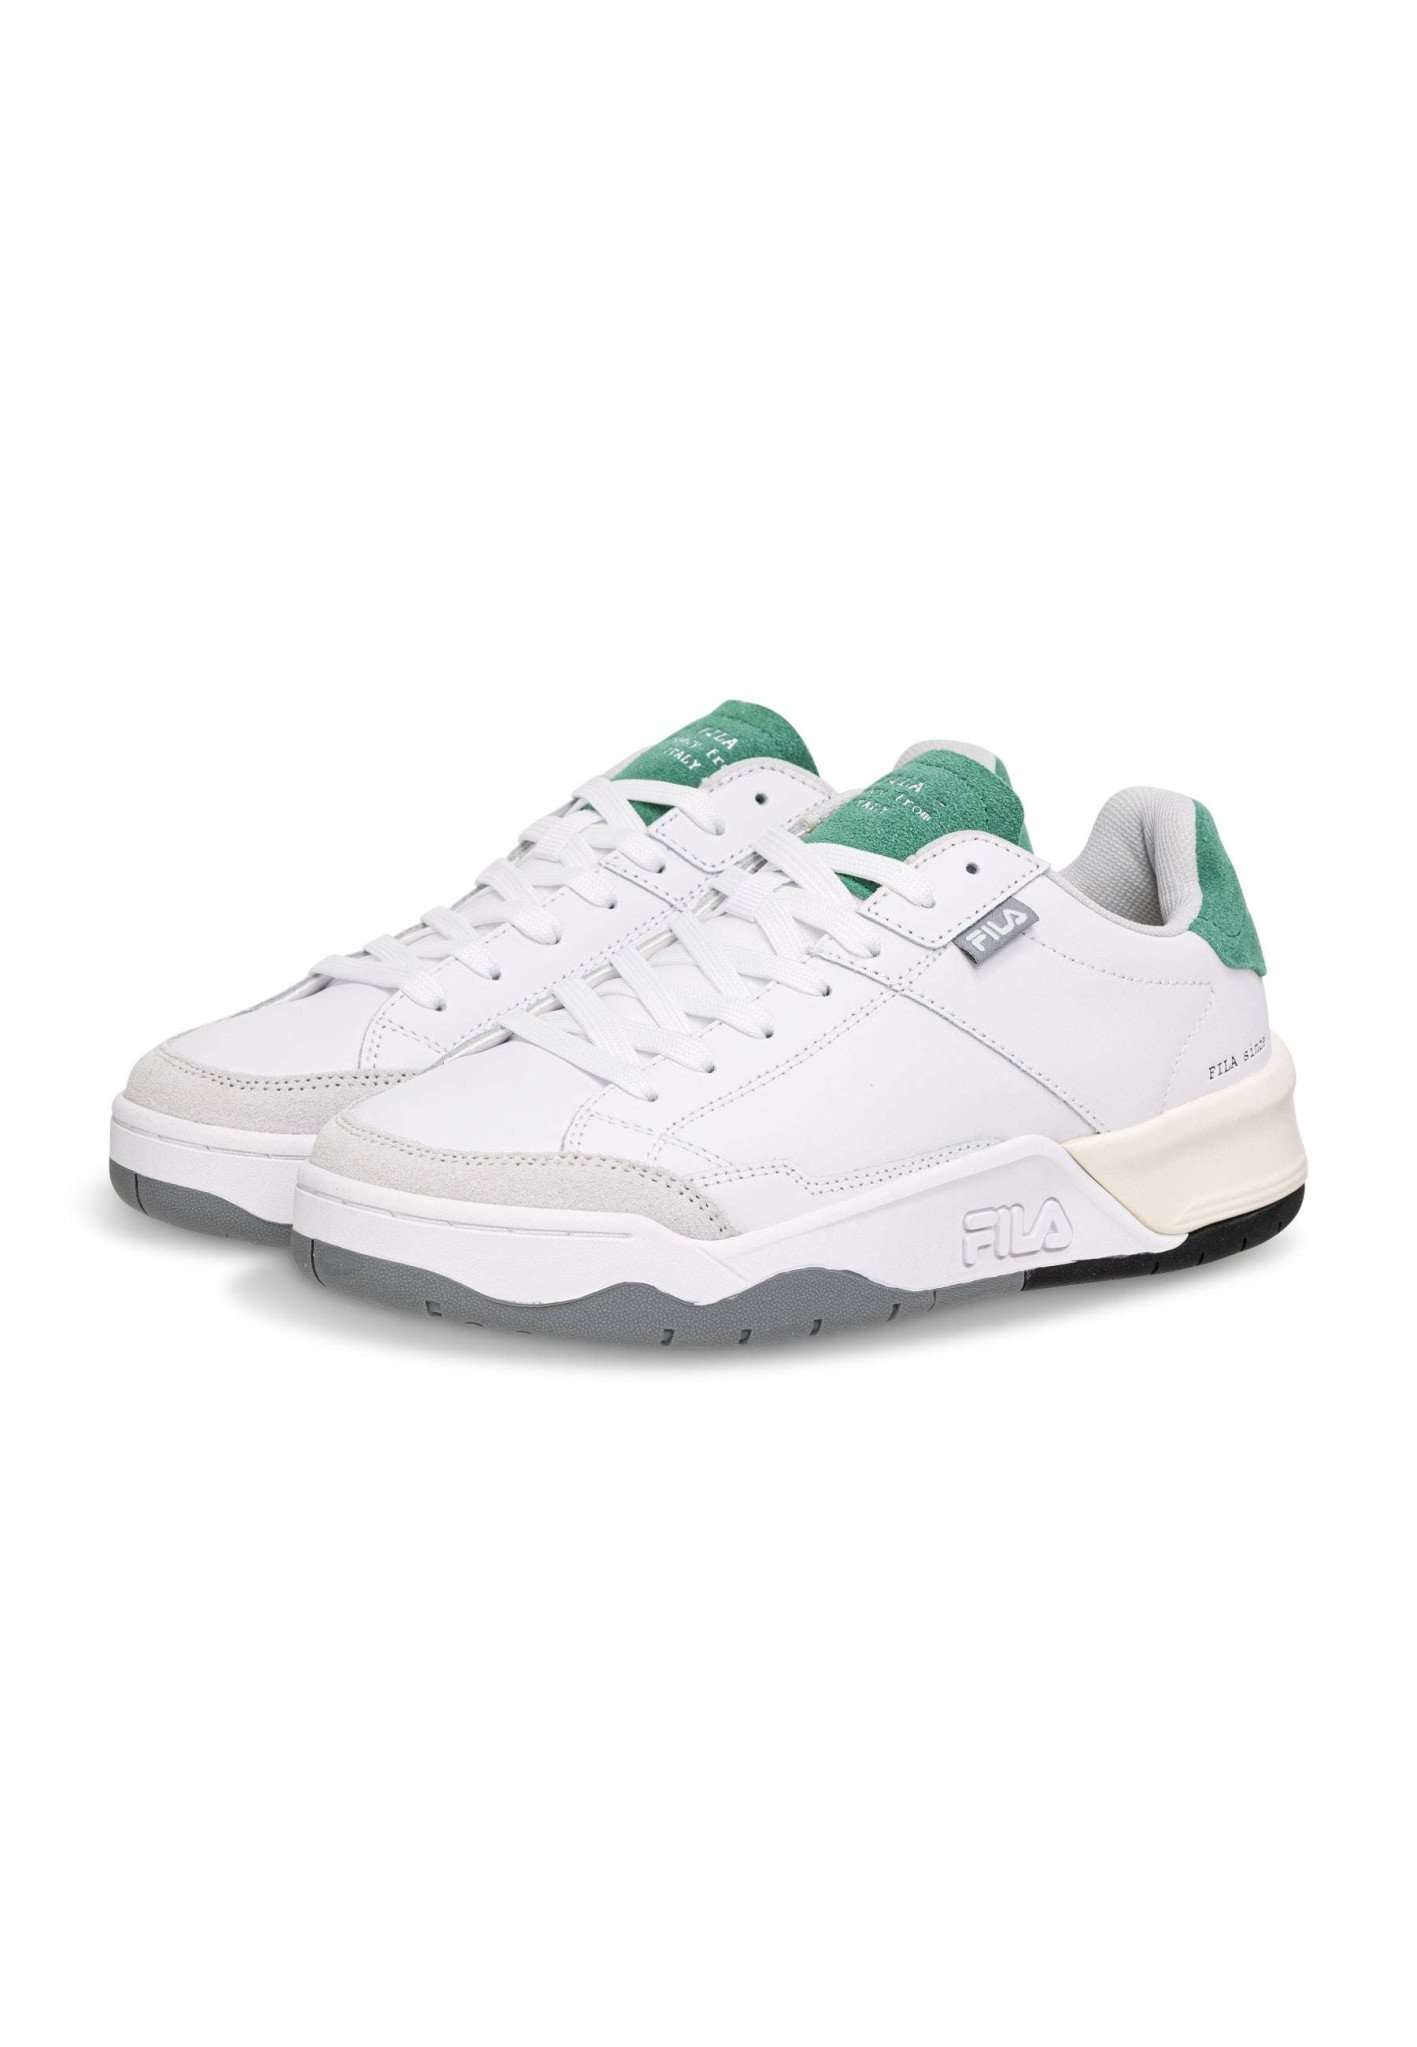 Fila Avenida in White-Verdant Green Sneakers Fila   